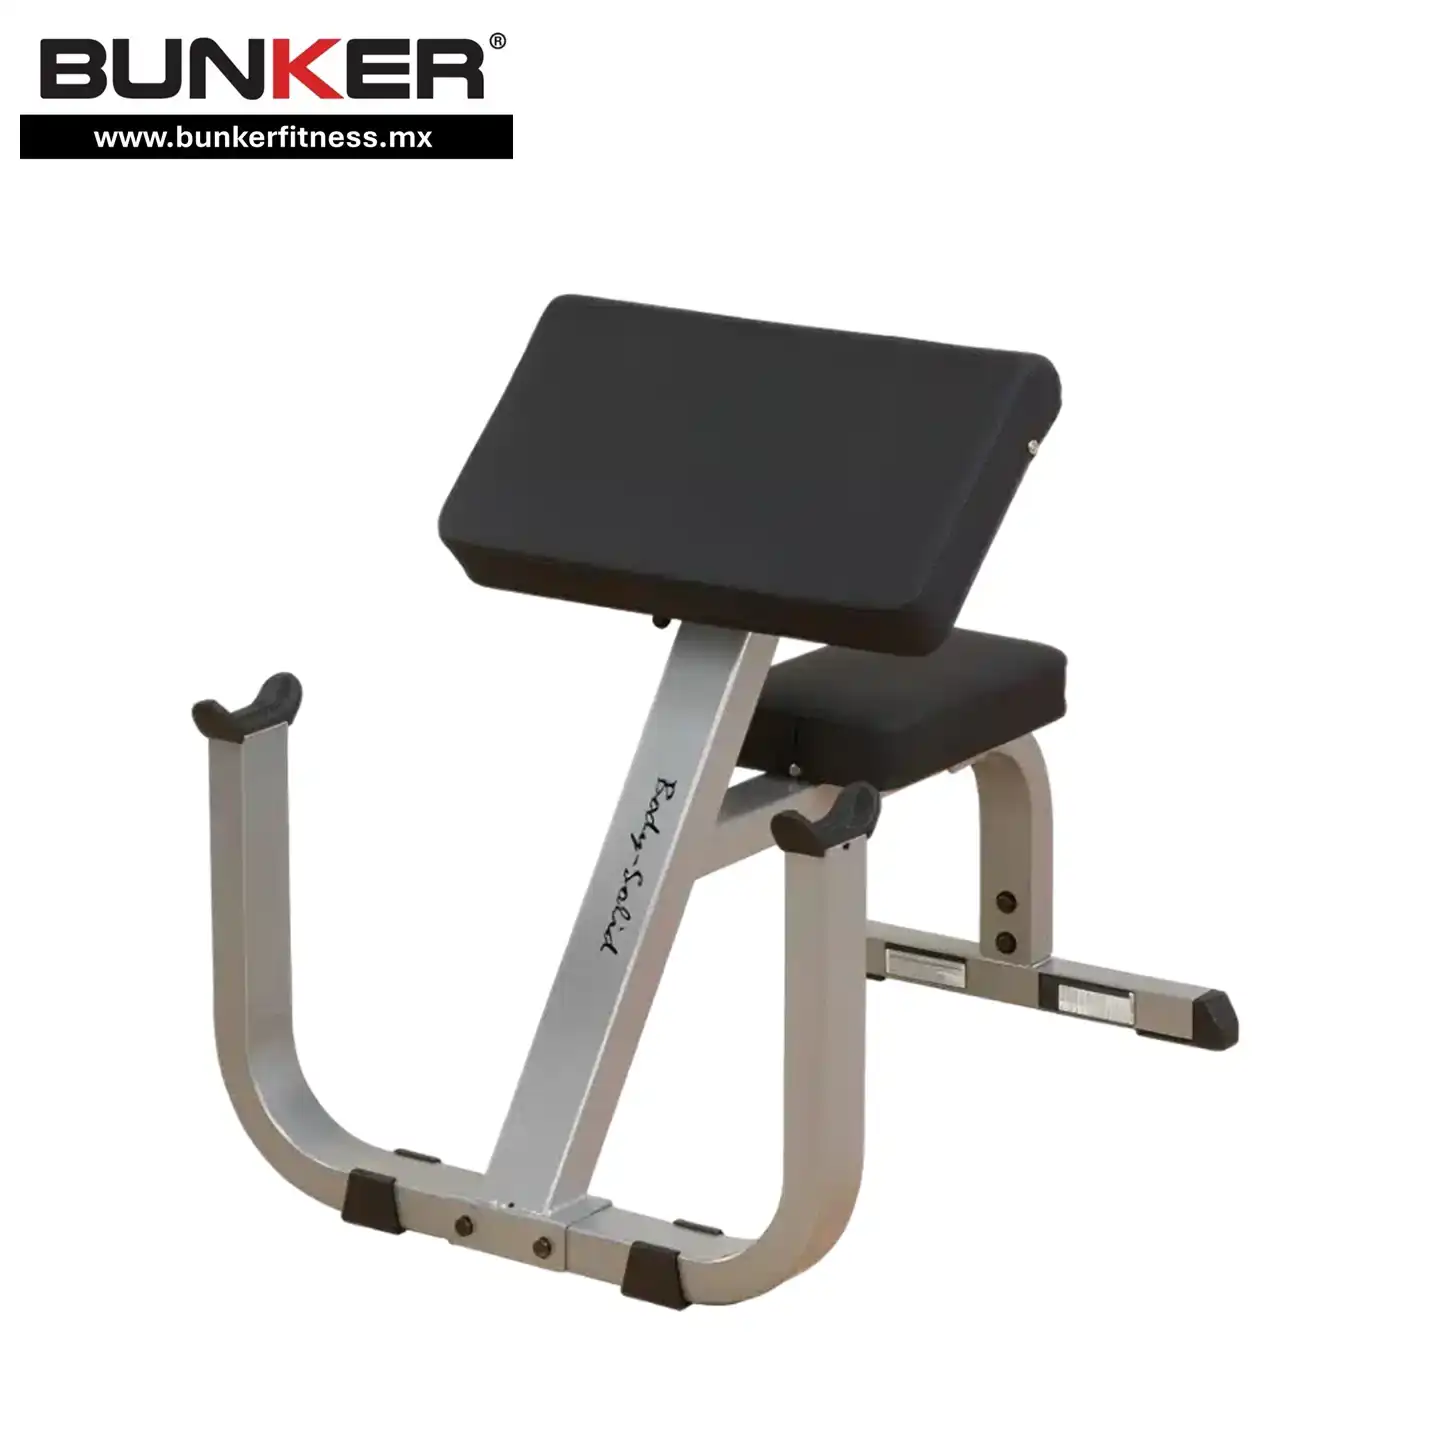 banco scott predicador body solid para ejercicio y gimnasio en casa bunker gym bunker fitness